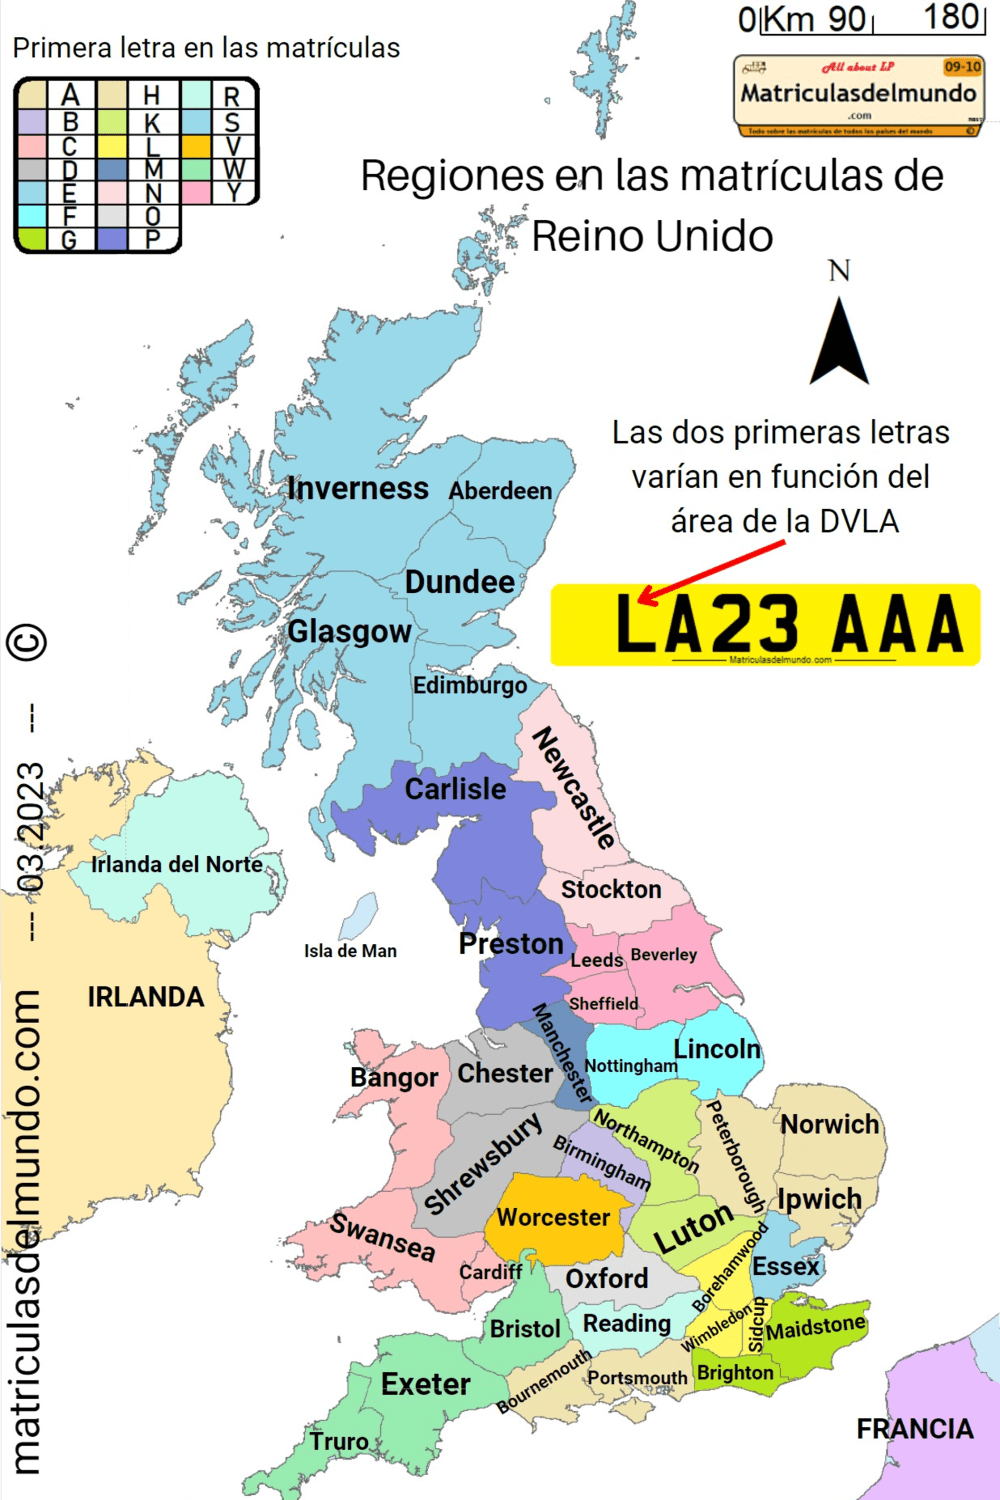 Mapa de las áreas regionales de las DVLA de Gran Bretaña con nombres